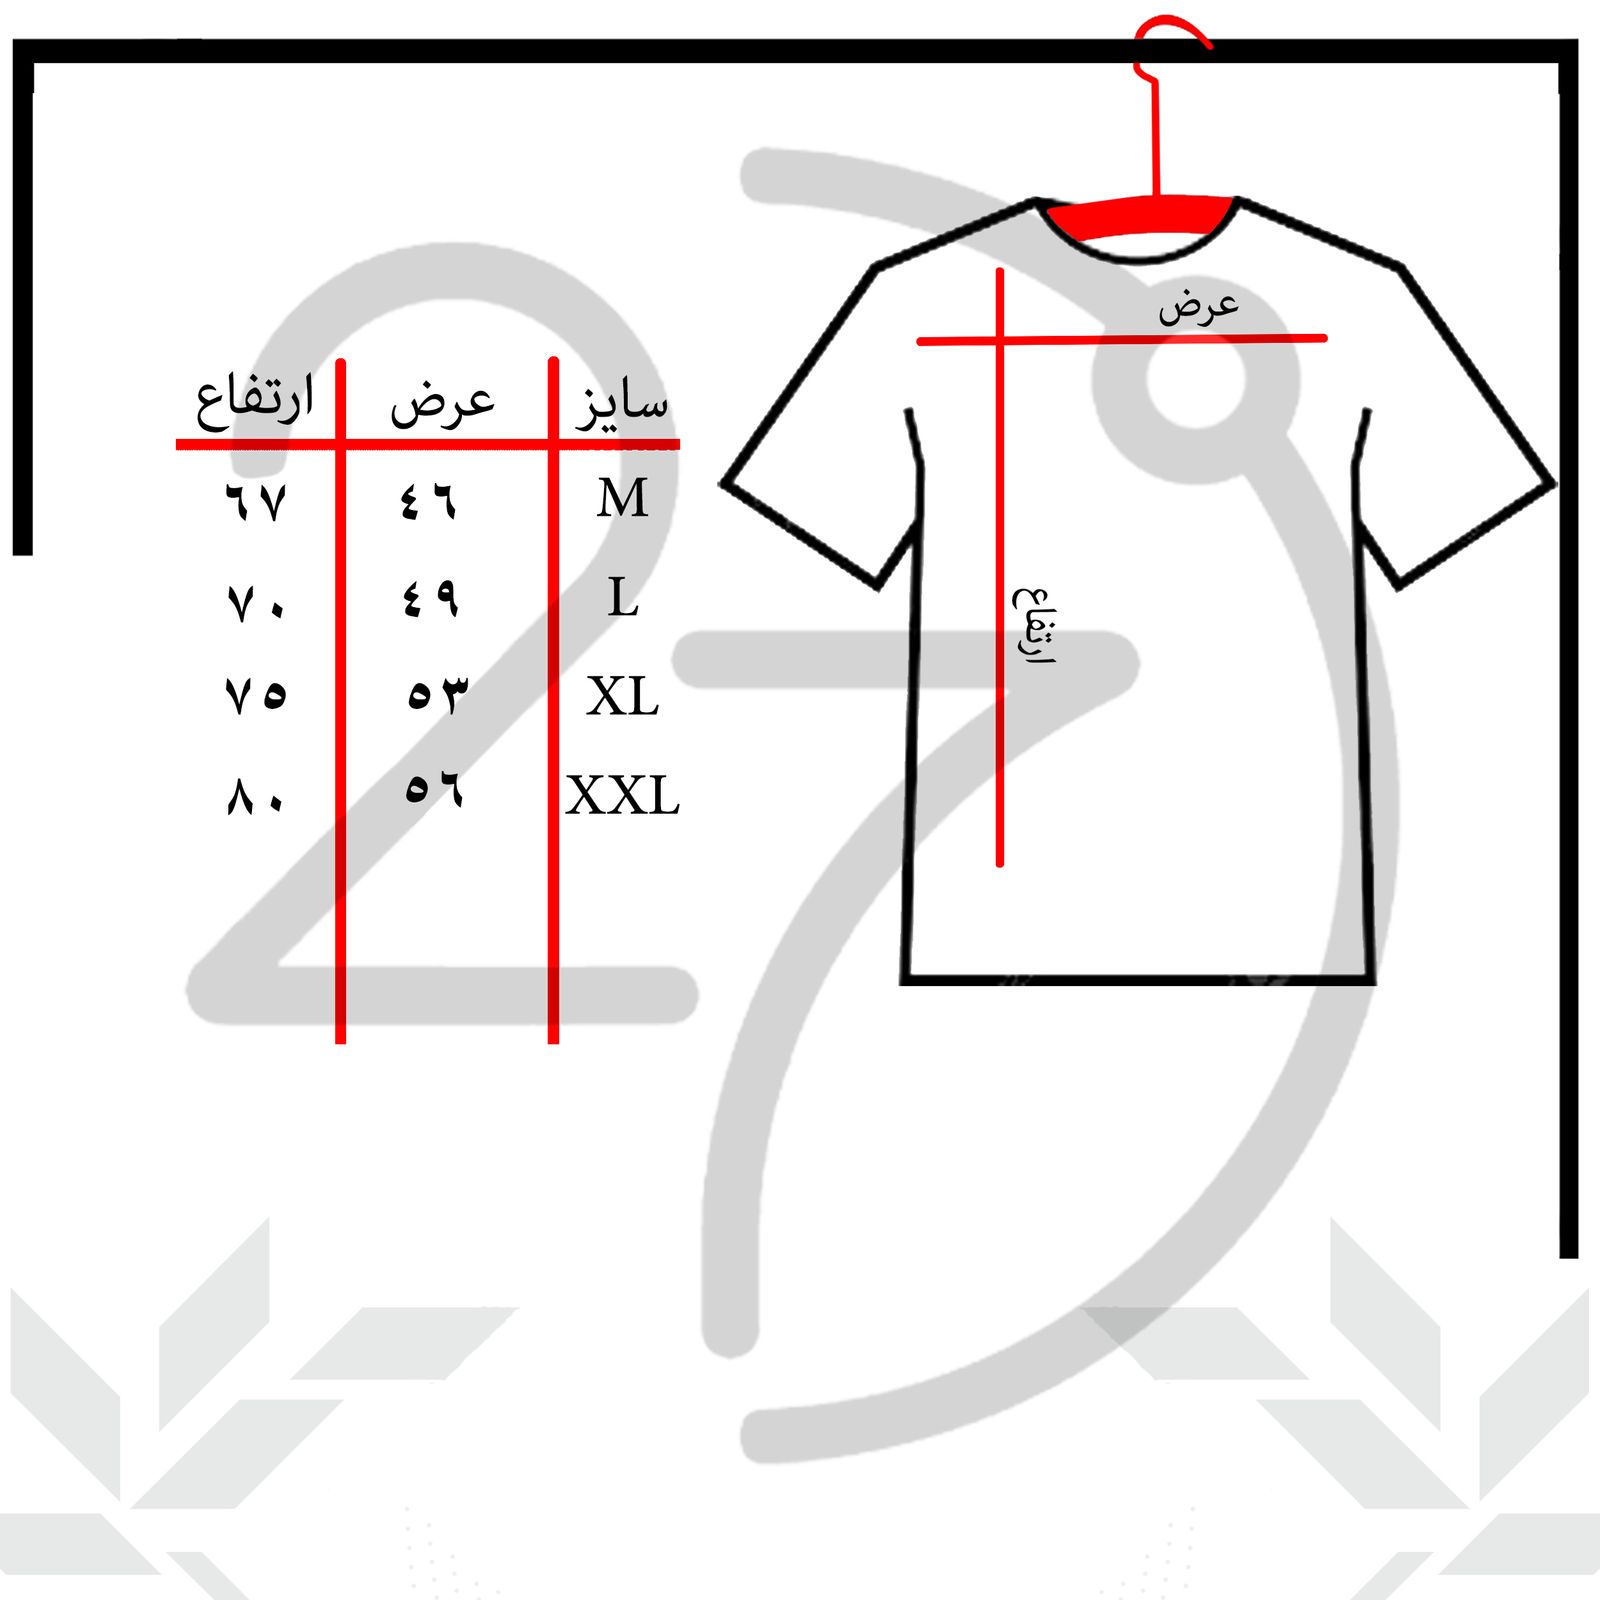 تی شرت آستین کوتاه مردانه 27 مدل simple کد KV319 رنگ مشکی -  - 3